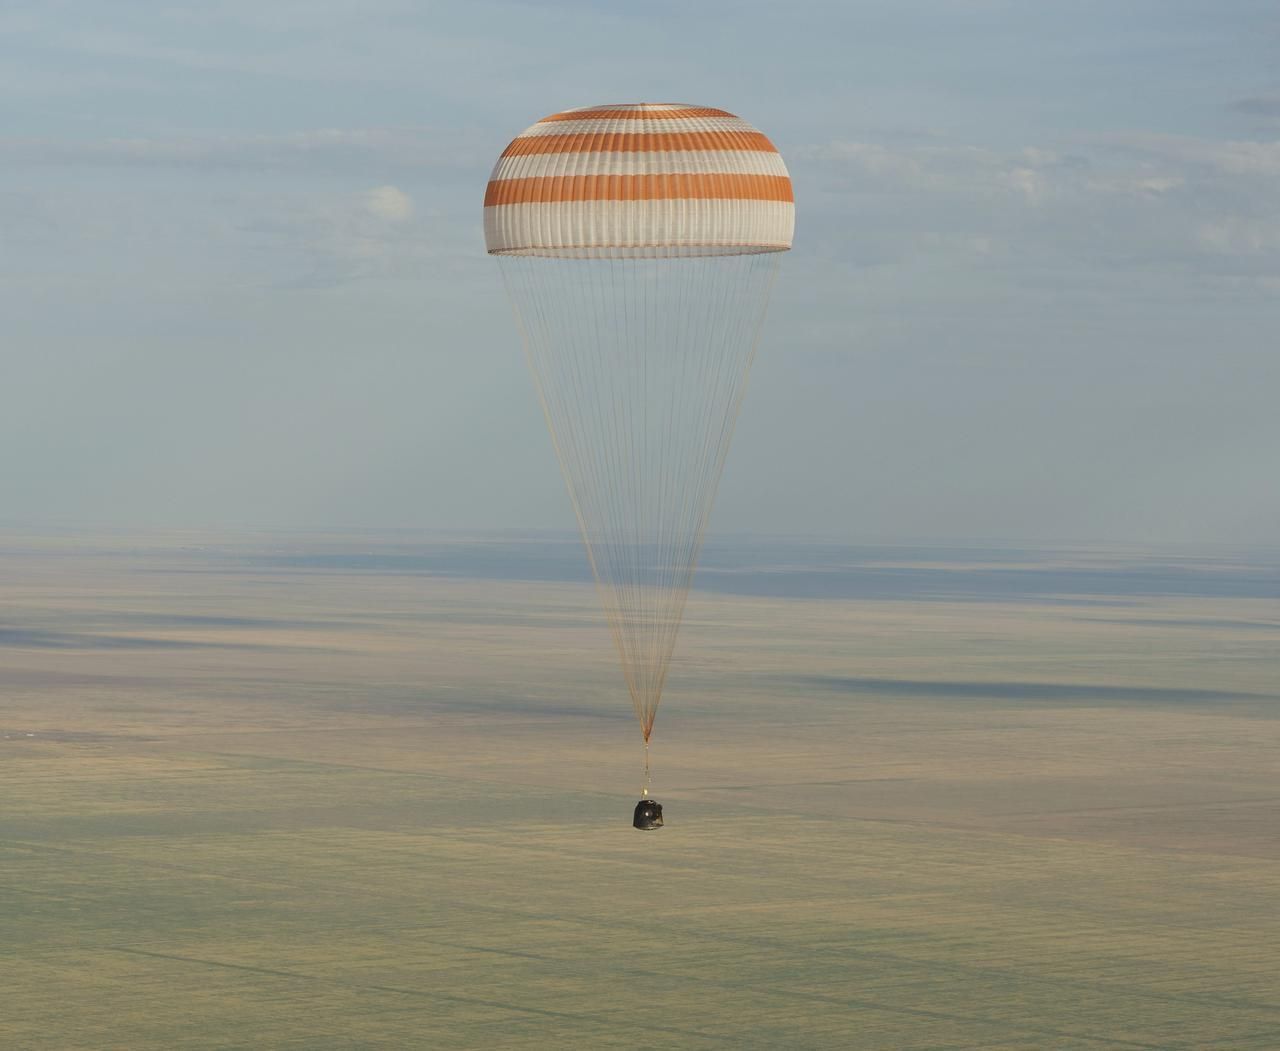 Návrat kosmonautů z ISS 17. září